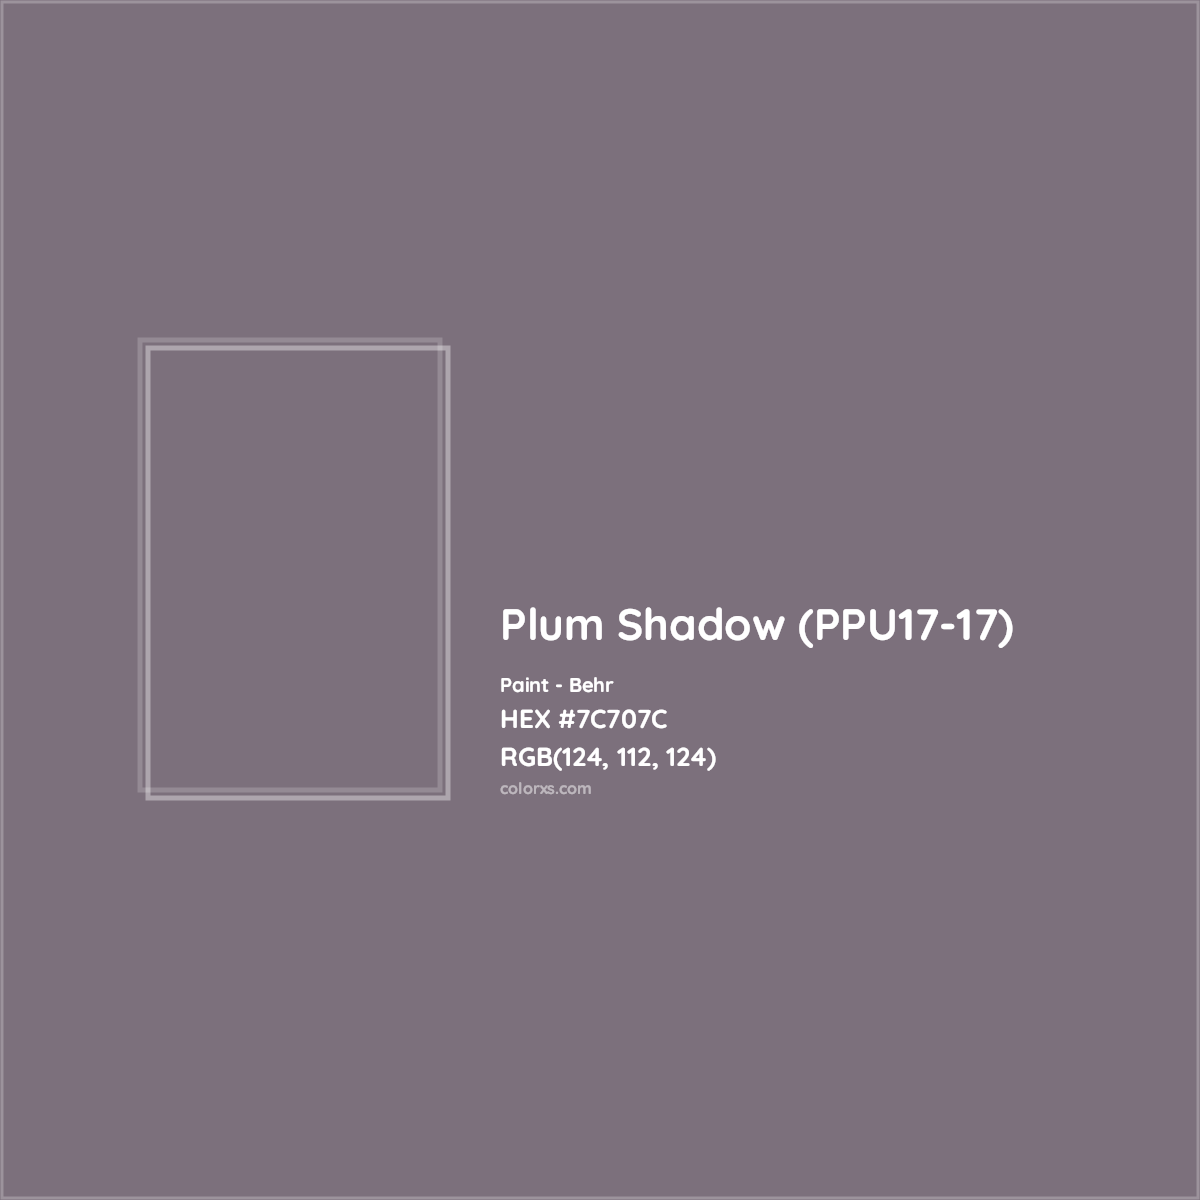 HEX #7C707C Plum Shadow (PPU17-17) Paint Behr - Color Code